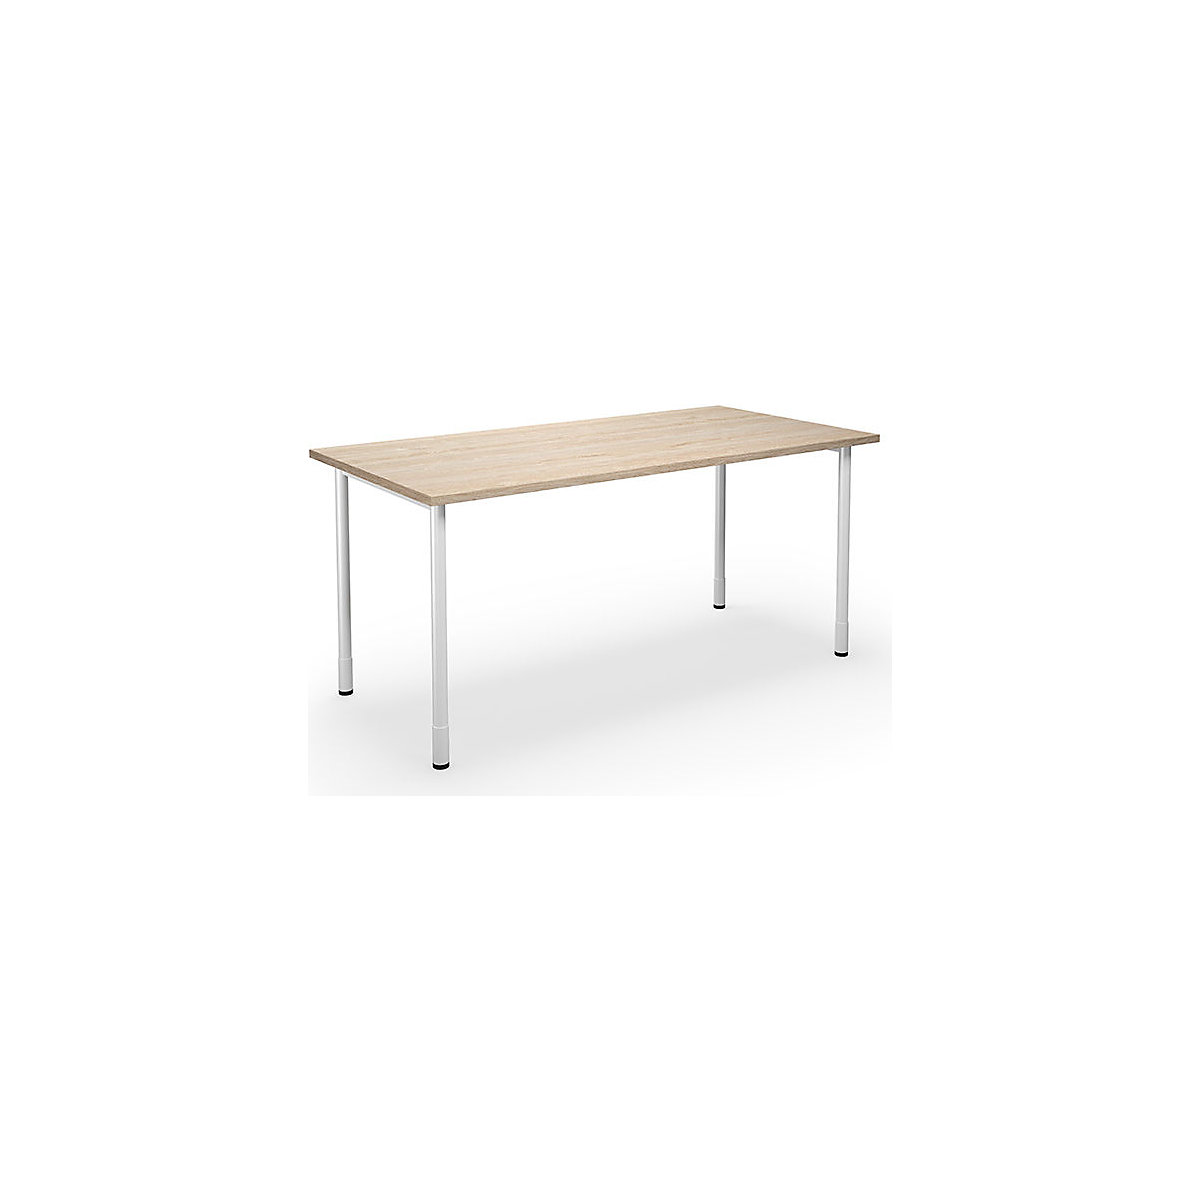 DUO-C multi-purpose desk, straight tabletop, WxD 1600 x 800 mm, oak, white-16